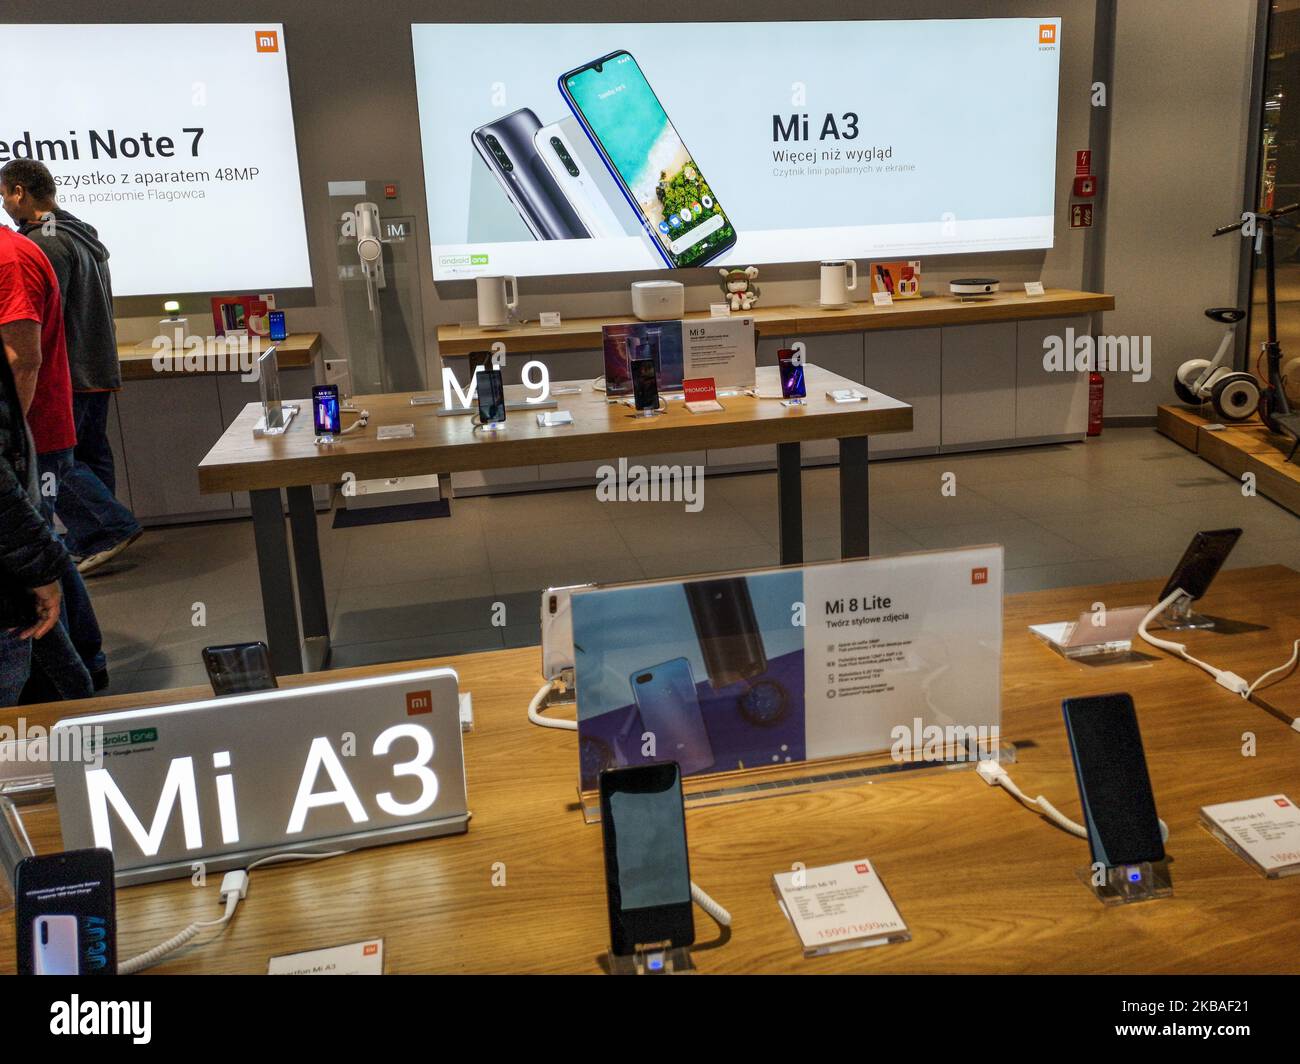 Cinese Xiaomi mi Store interno con mi A3 smartphone offerta è visto in Riviera centro commerciale a Gdynia, Polonia il 9 novembre 2019 (Foto di Michal Fludra/NurPhoto) Foto Stock